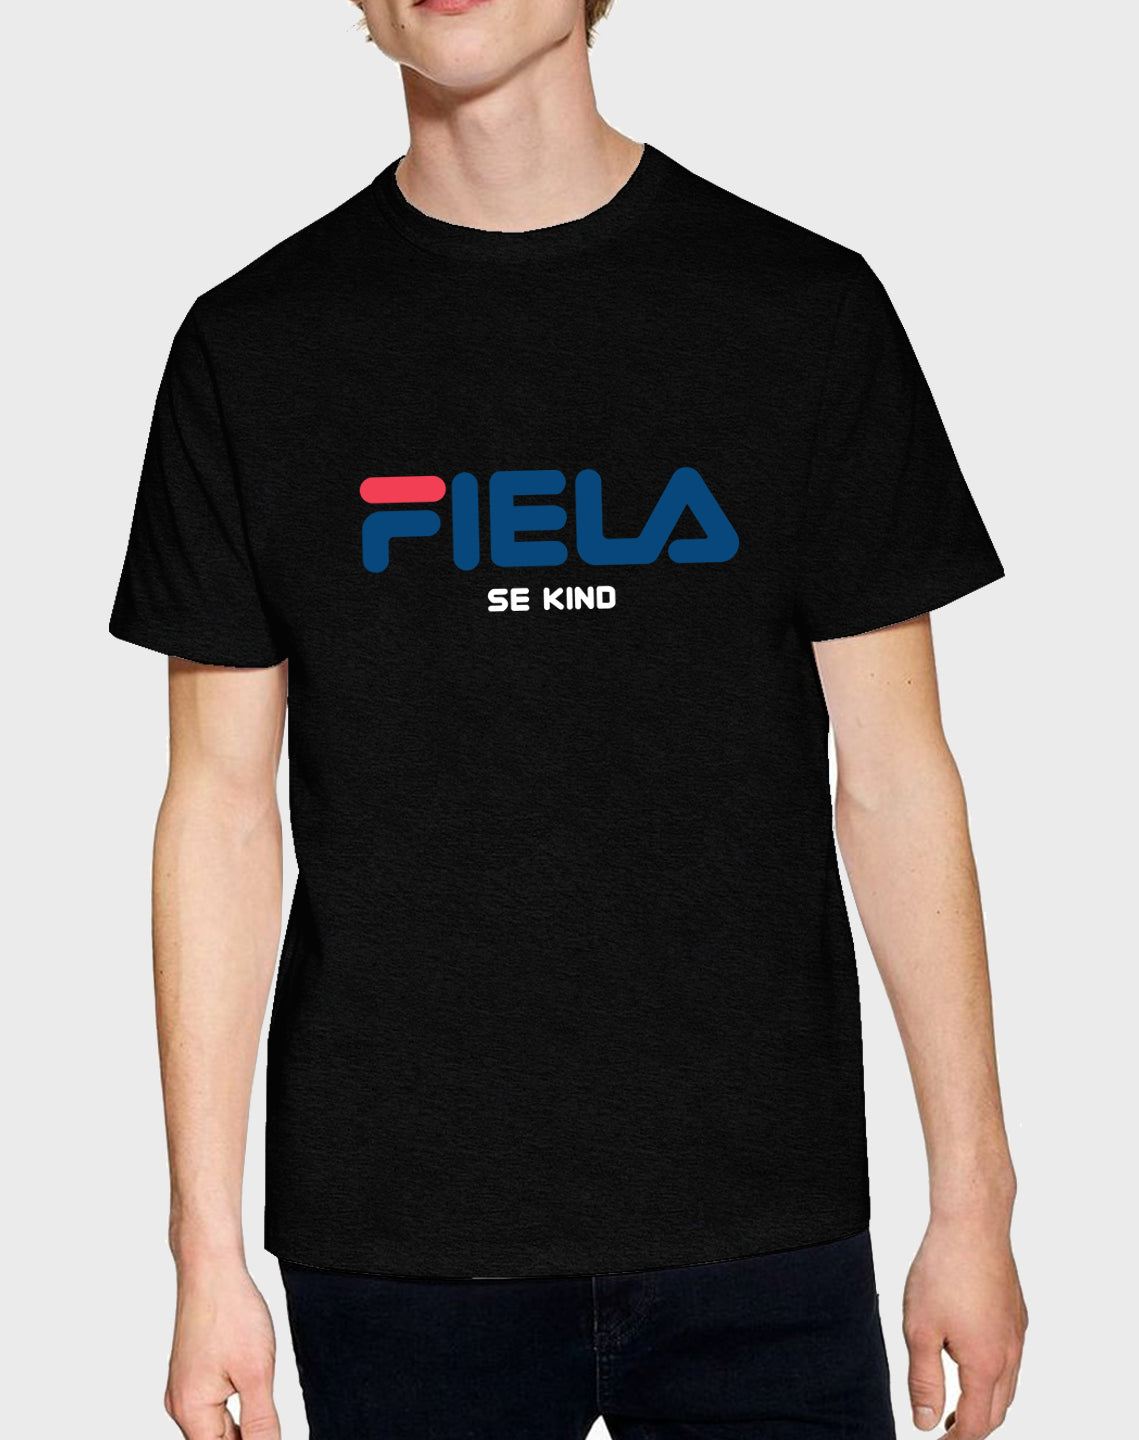 Idees Vol Vrees® Fiela (se kind) Men's T-shirt